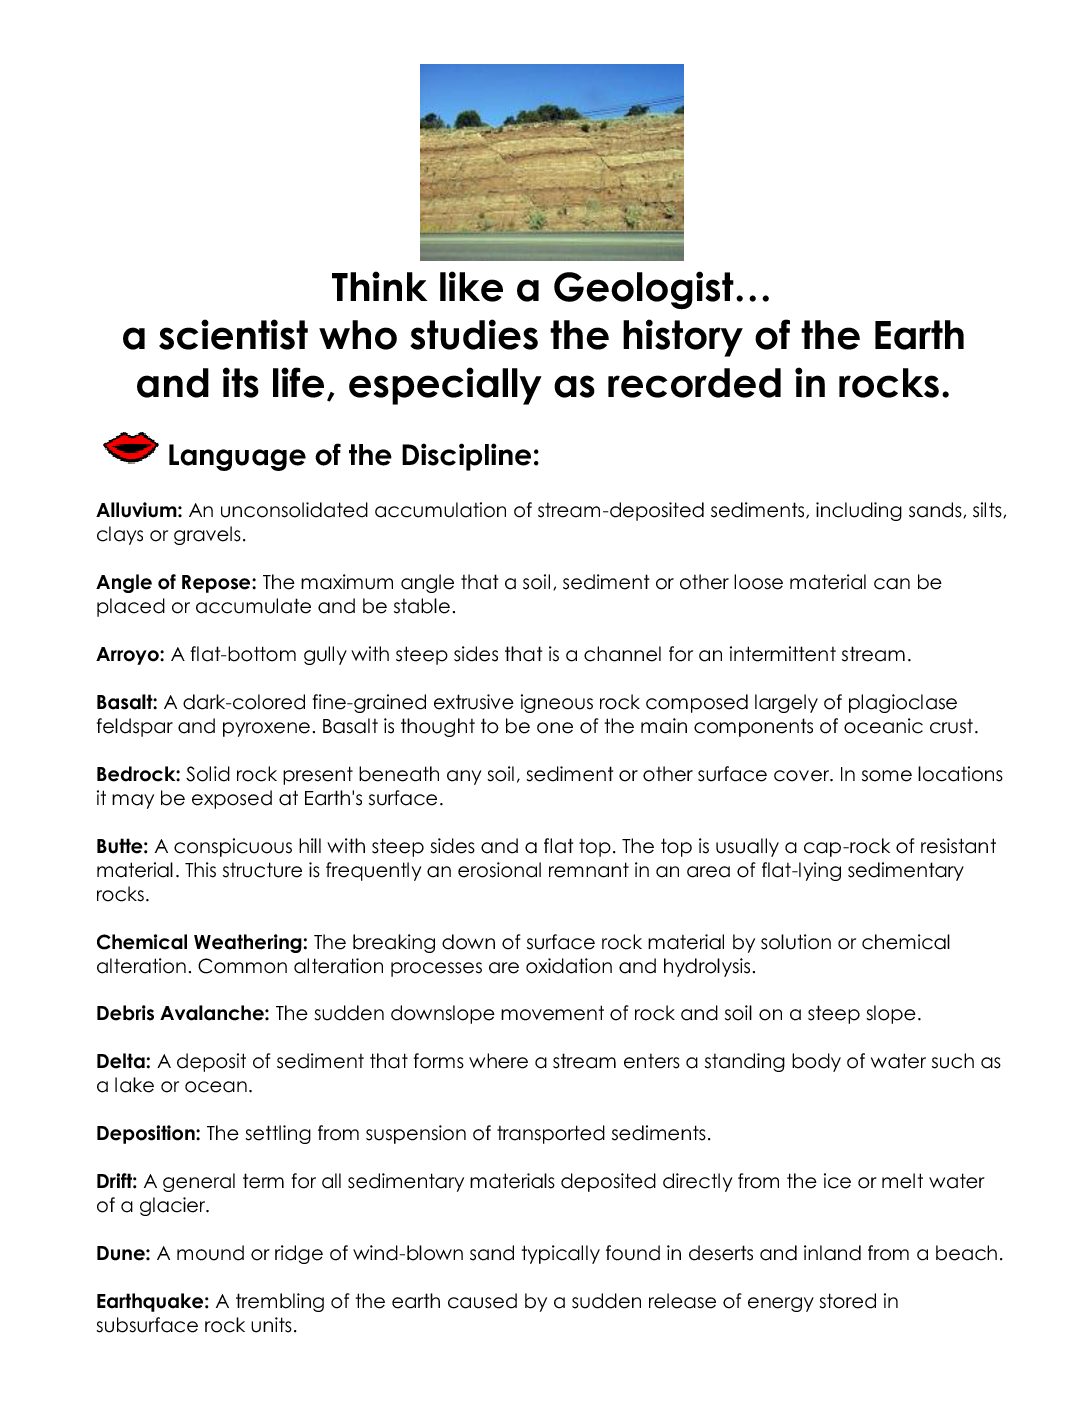 Think like a geologist sheet